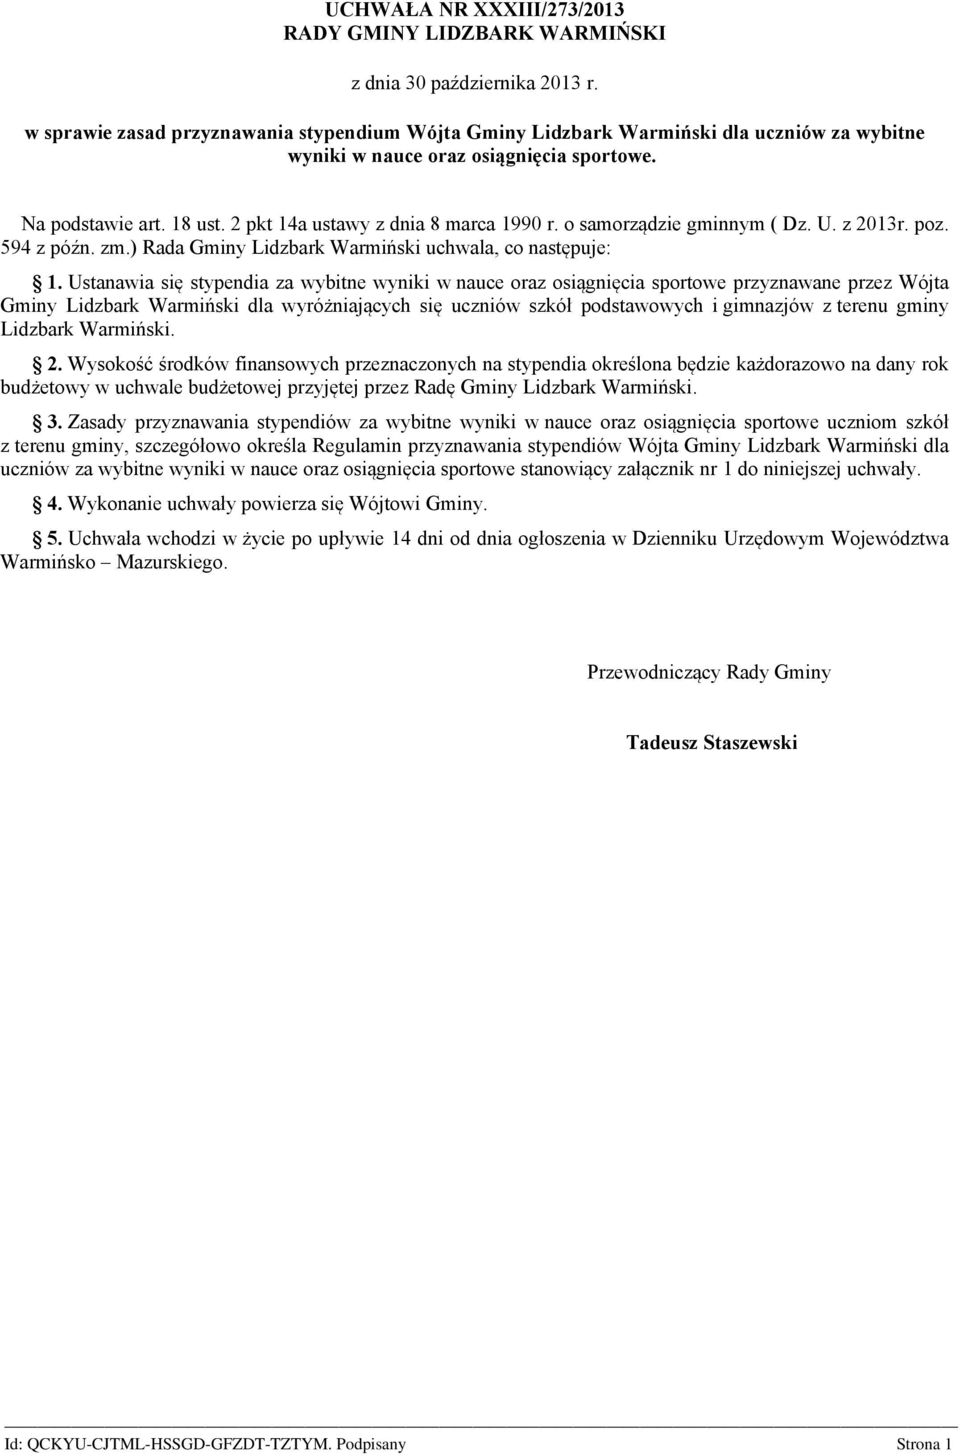 2 pkt 14a ustawy z dnia 8 marca 1990 r. o samorządzie gminnym ( Dz. U. z 2013r. poz. 594 z późn. zm.) Rada Gminy Lidzbark Warmiński uchwala, co następuje: 1.